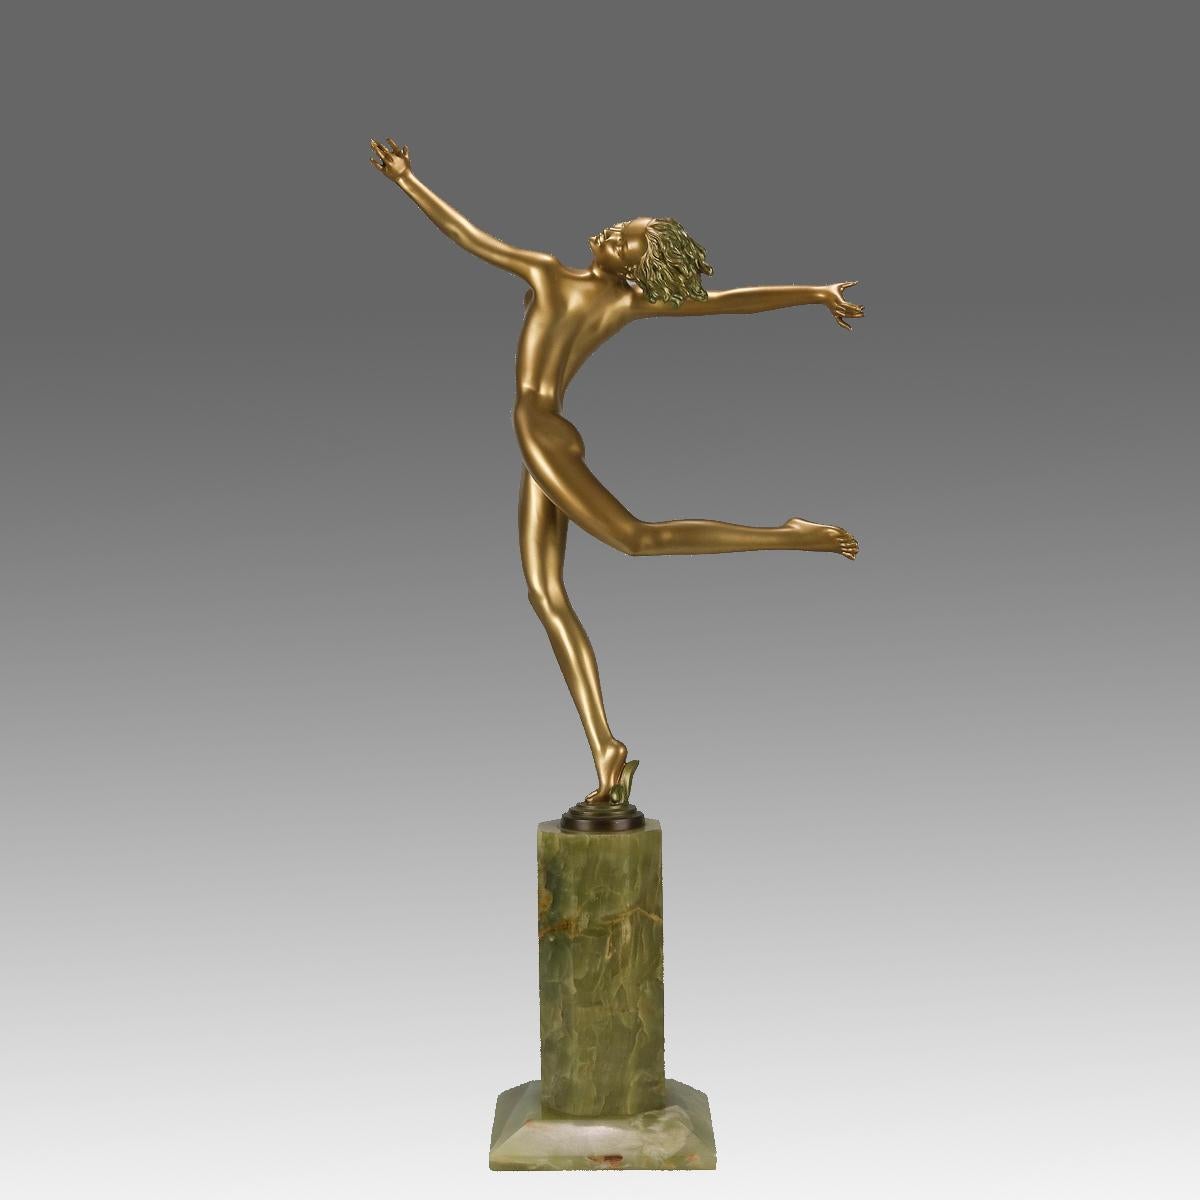 Eine beschwingte, kalt bemalte Bronzefigur einer Tänzerin in energischer Pose aus dem frühen 20. Jahrhundert mit ausgezeichneten Farben und sehr feinen Oberflächendetails, die auf einem hohen Sockel aus brasilianischem grünem Onyx steht und von